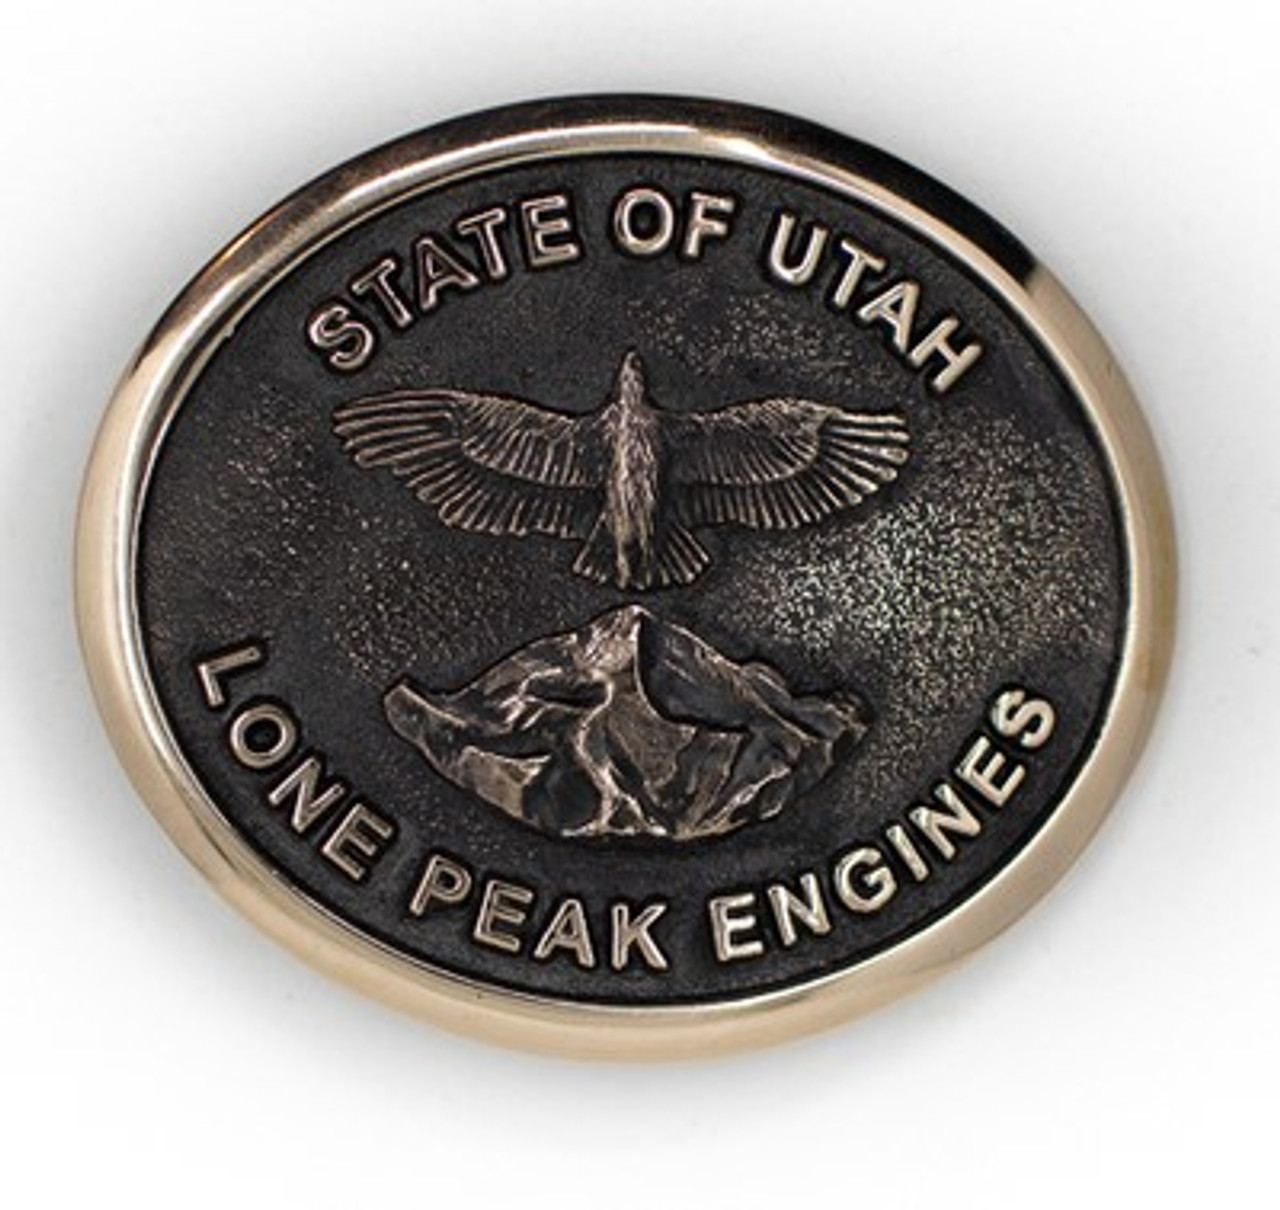 State of Utah Lone Peak Engine Buckle (RESTRICTED)